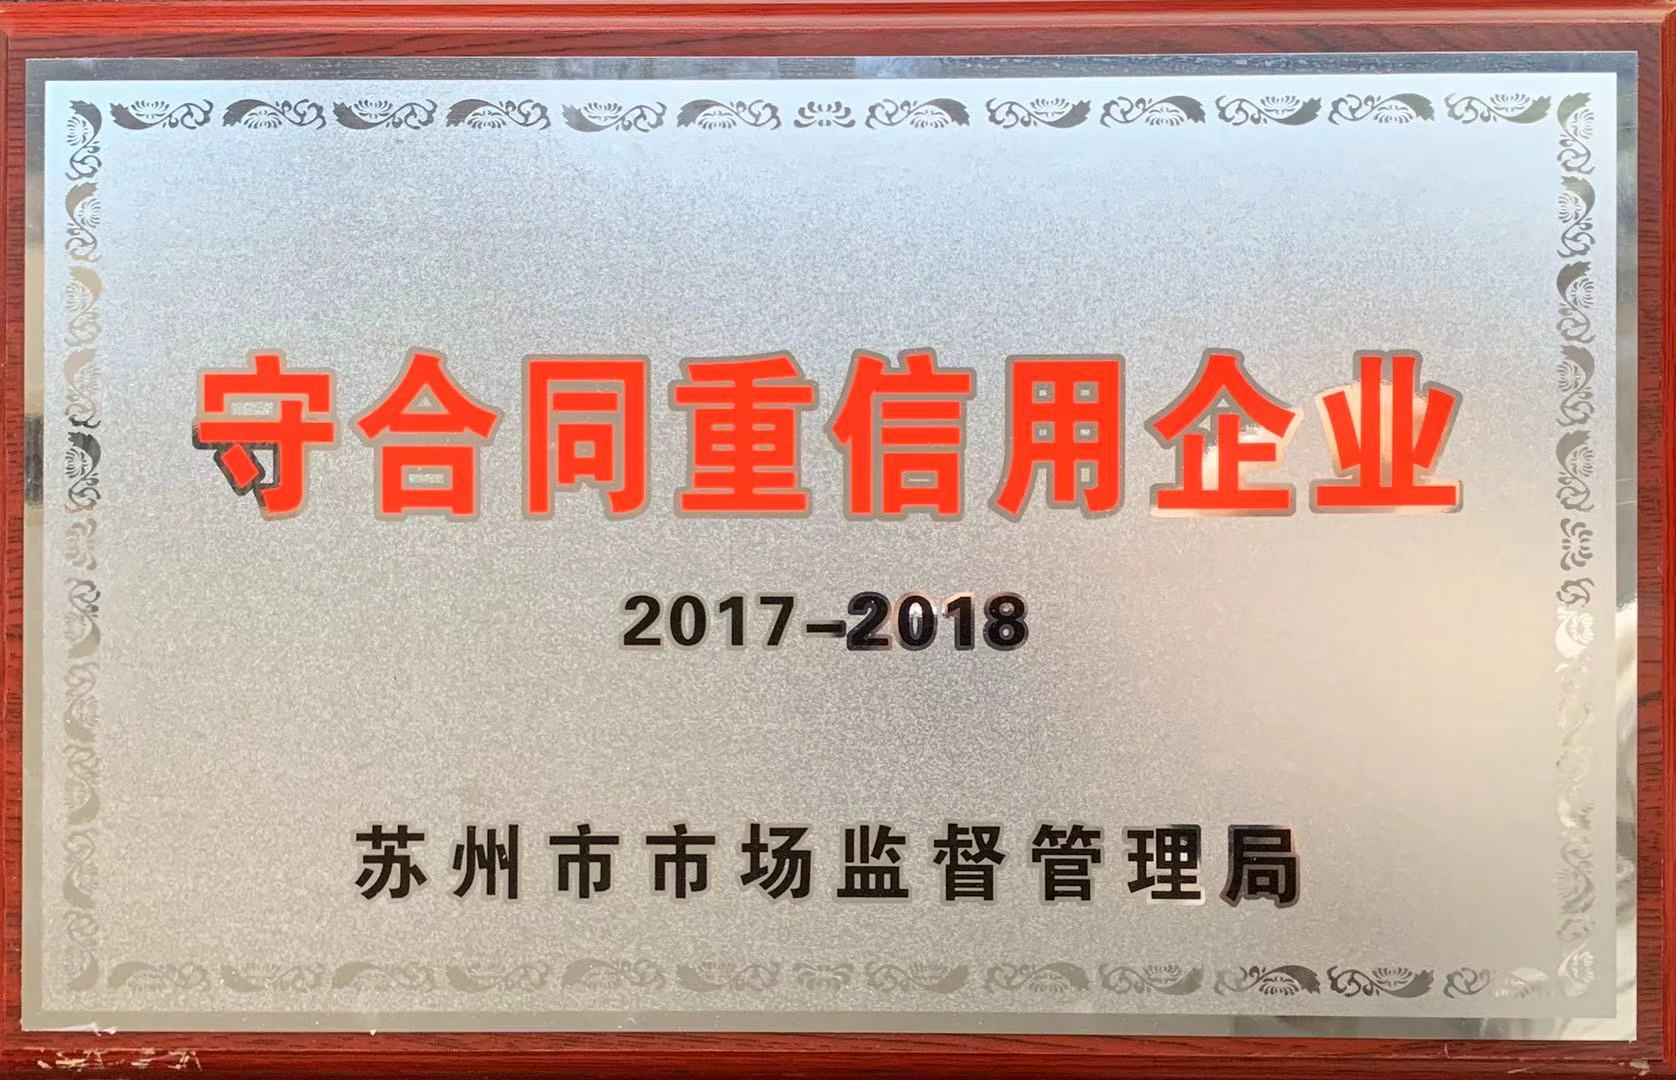 本所荣获苏州市市场监督管理局颁发的2017-2018年度“守合同重信用”称号